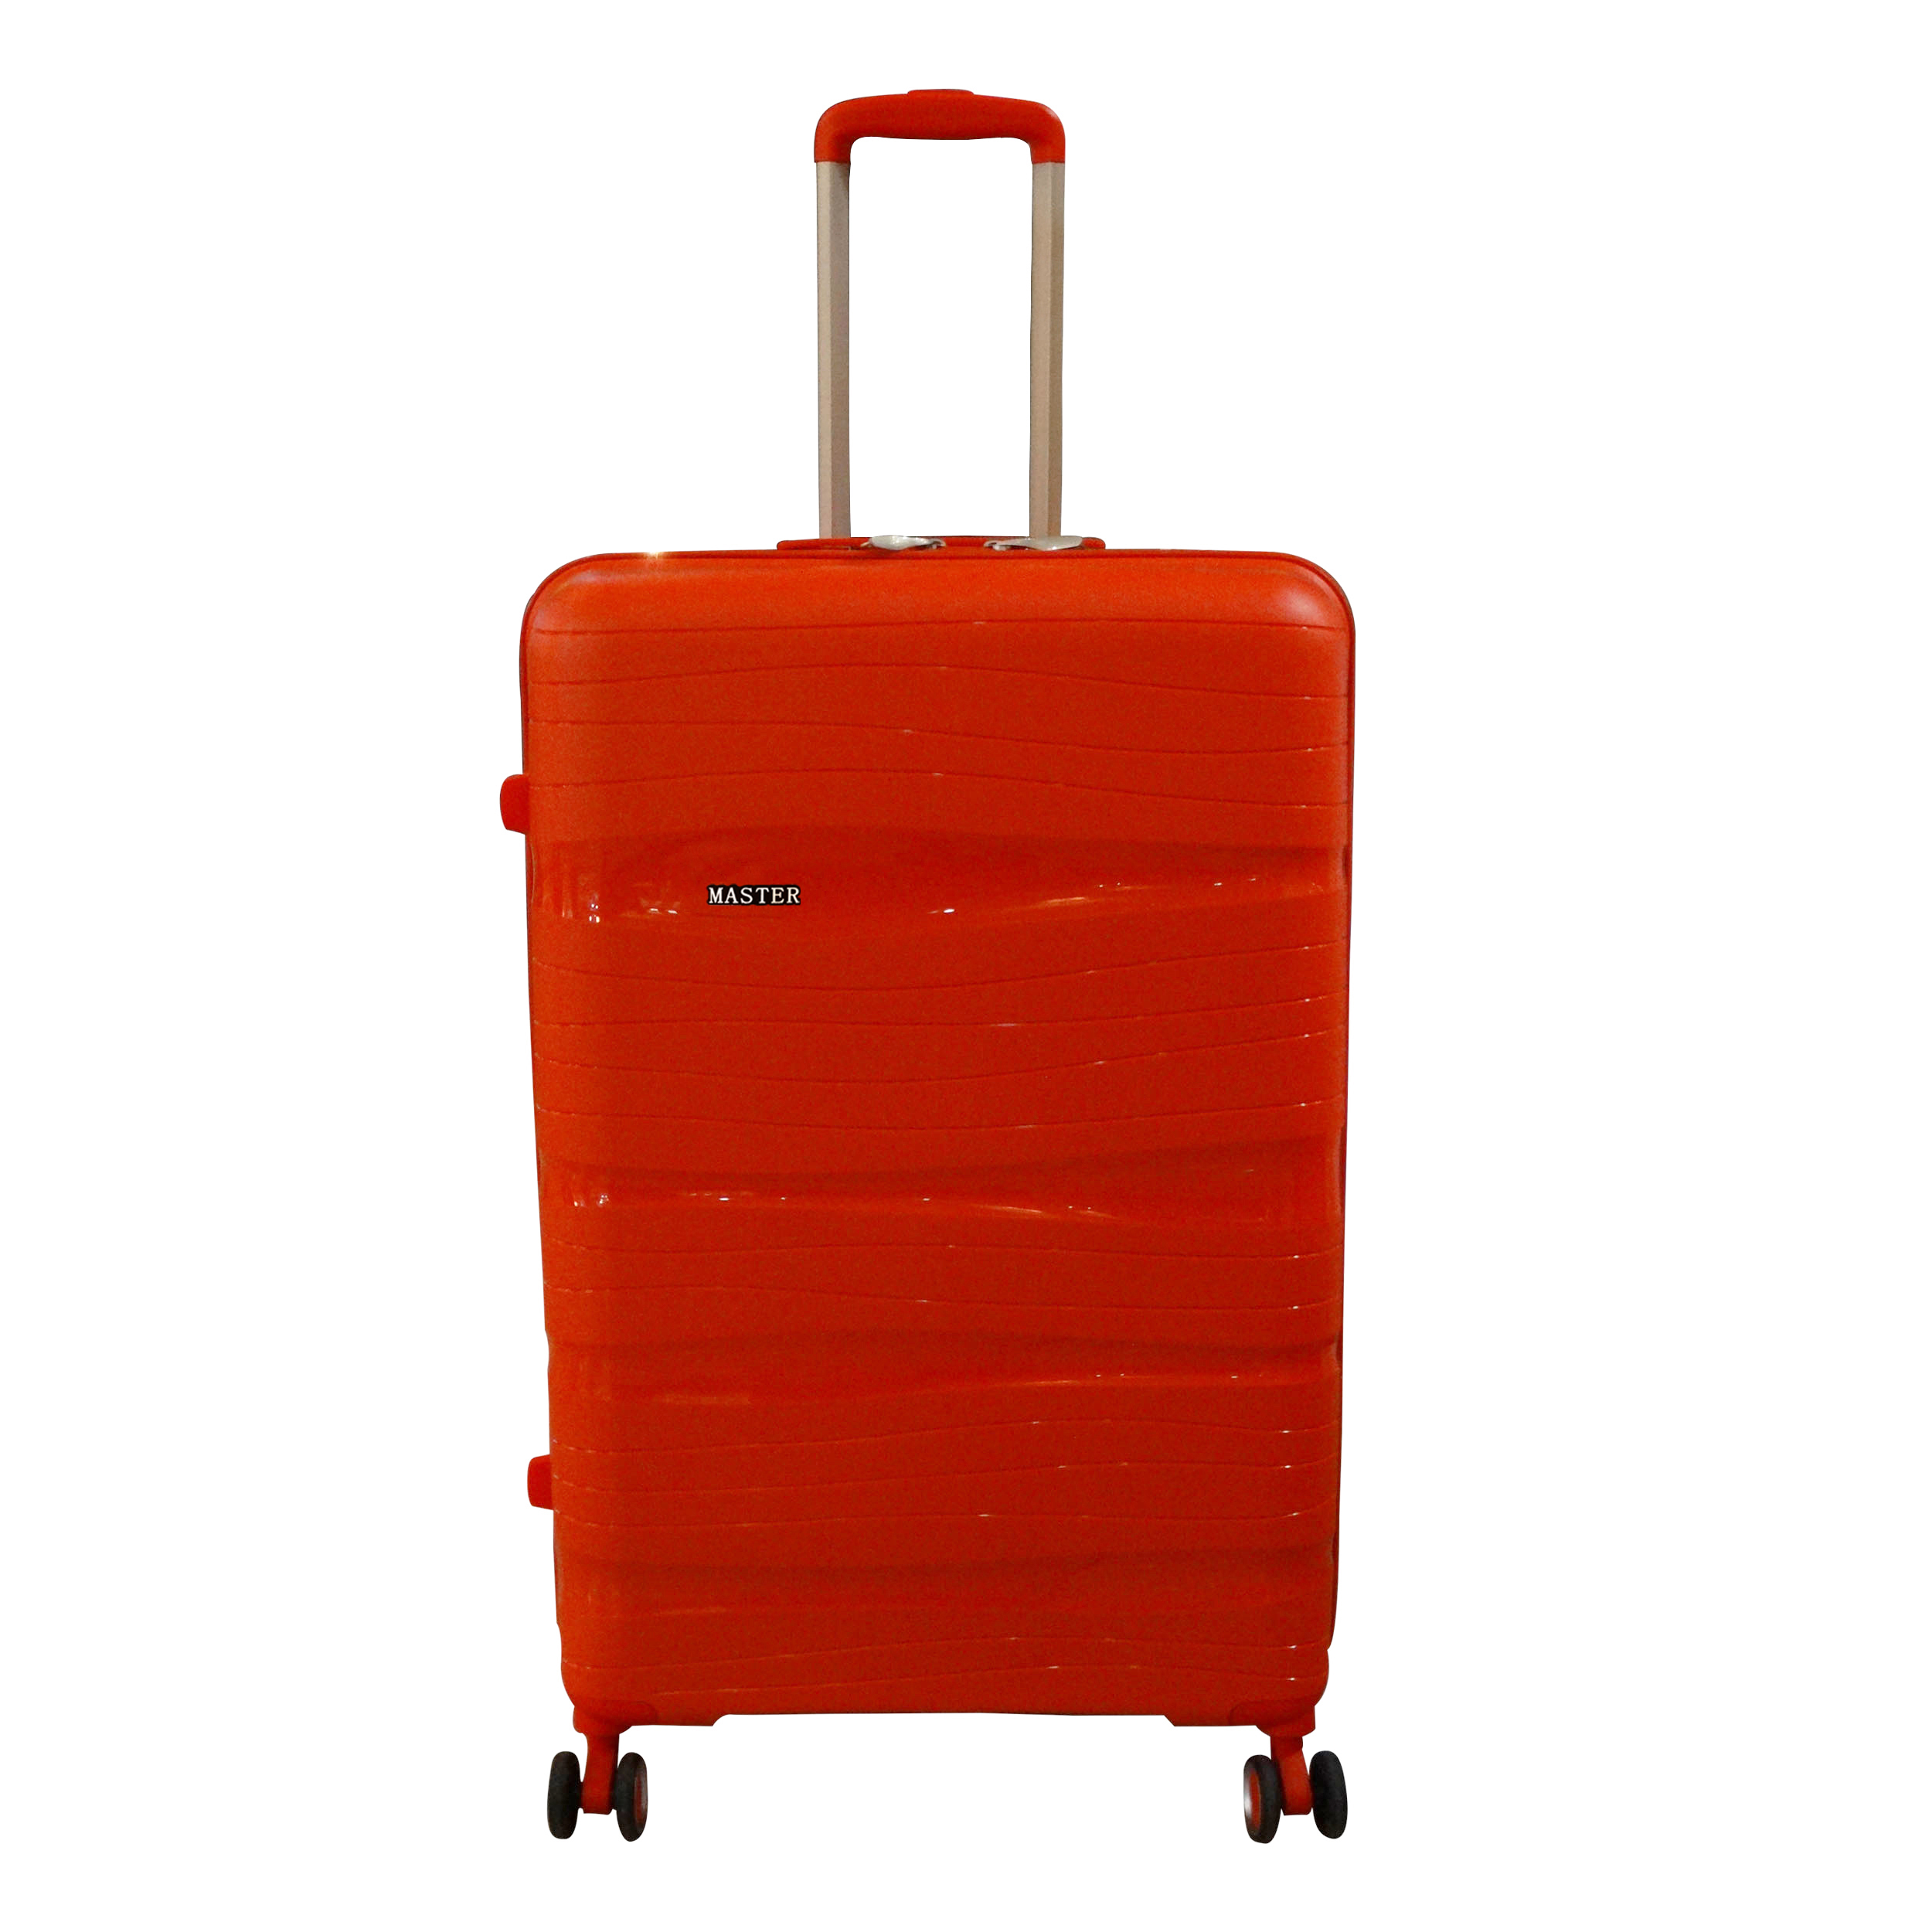 نکته خرید - قیمت روز چمدان مستر کد MA01 سایز بزرگ خرید